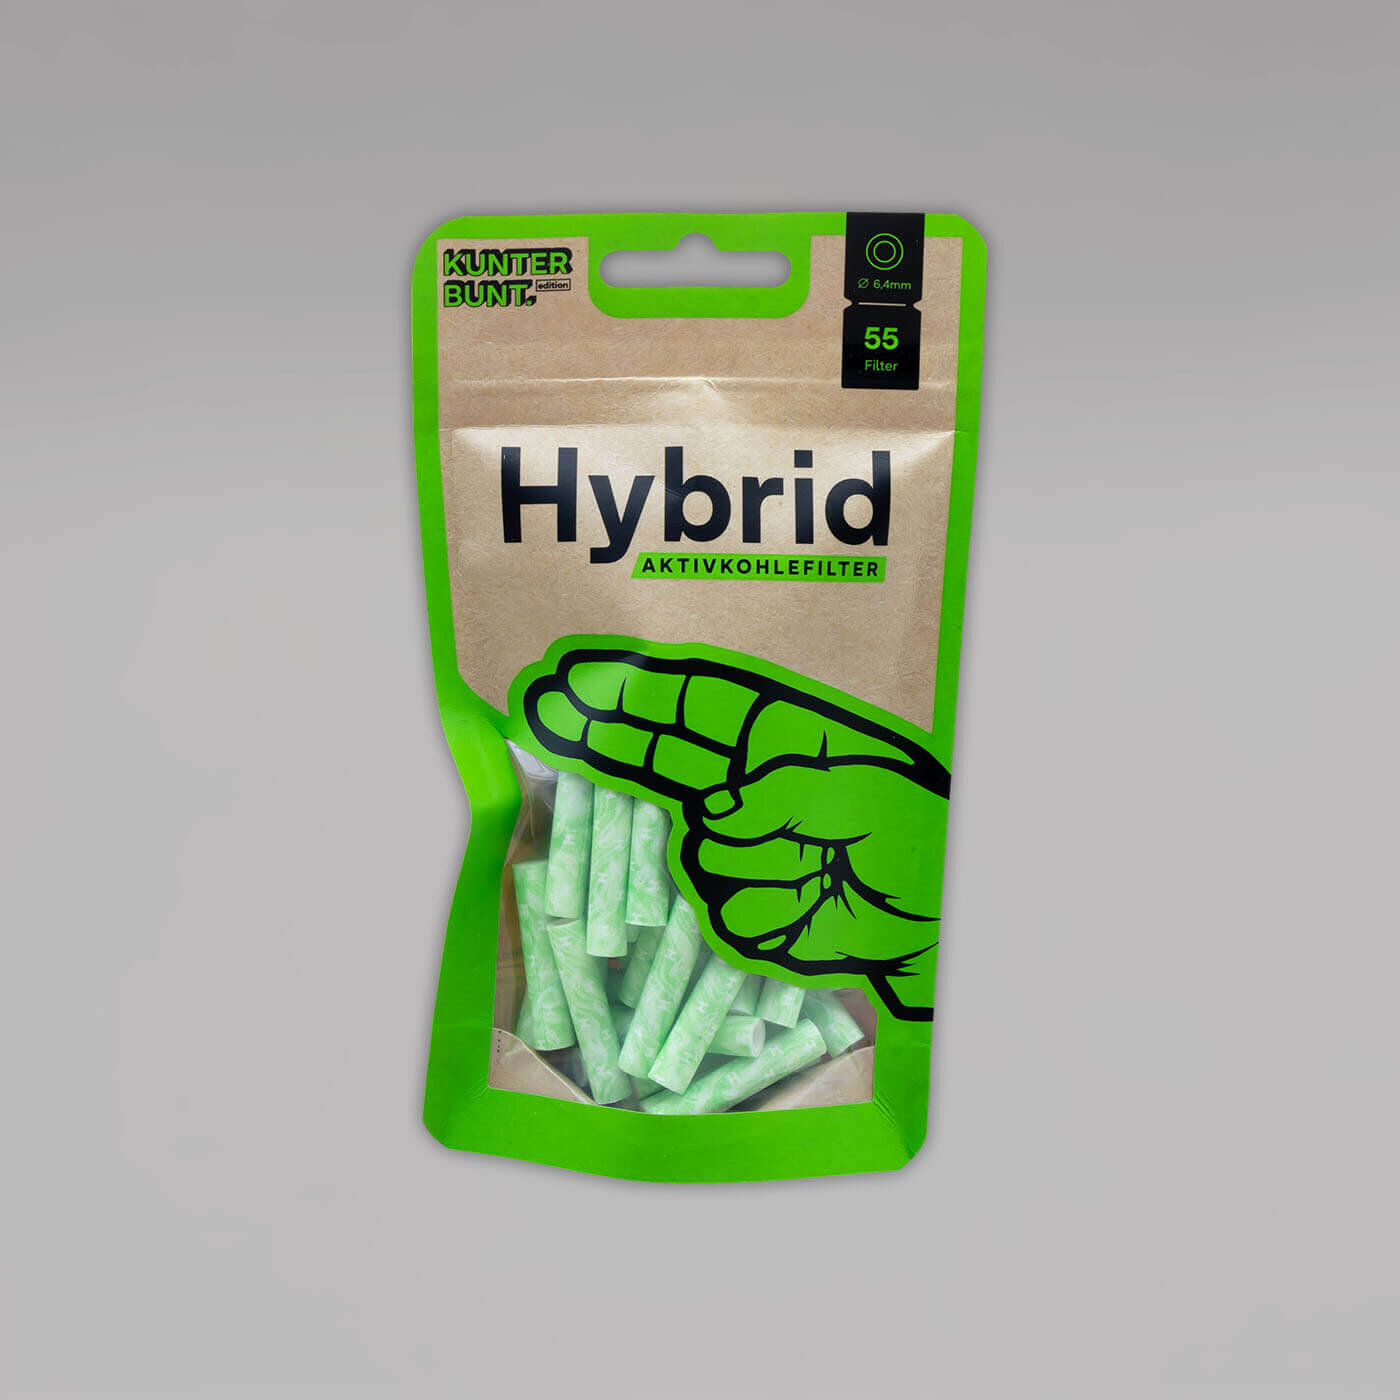 Hybrid Lime Aktivkohle Filter jetzt günstig bestellen